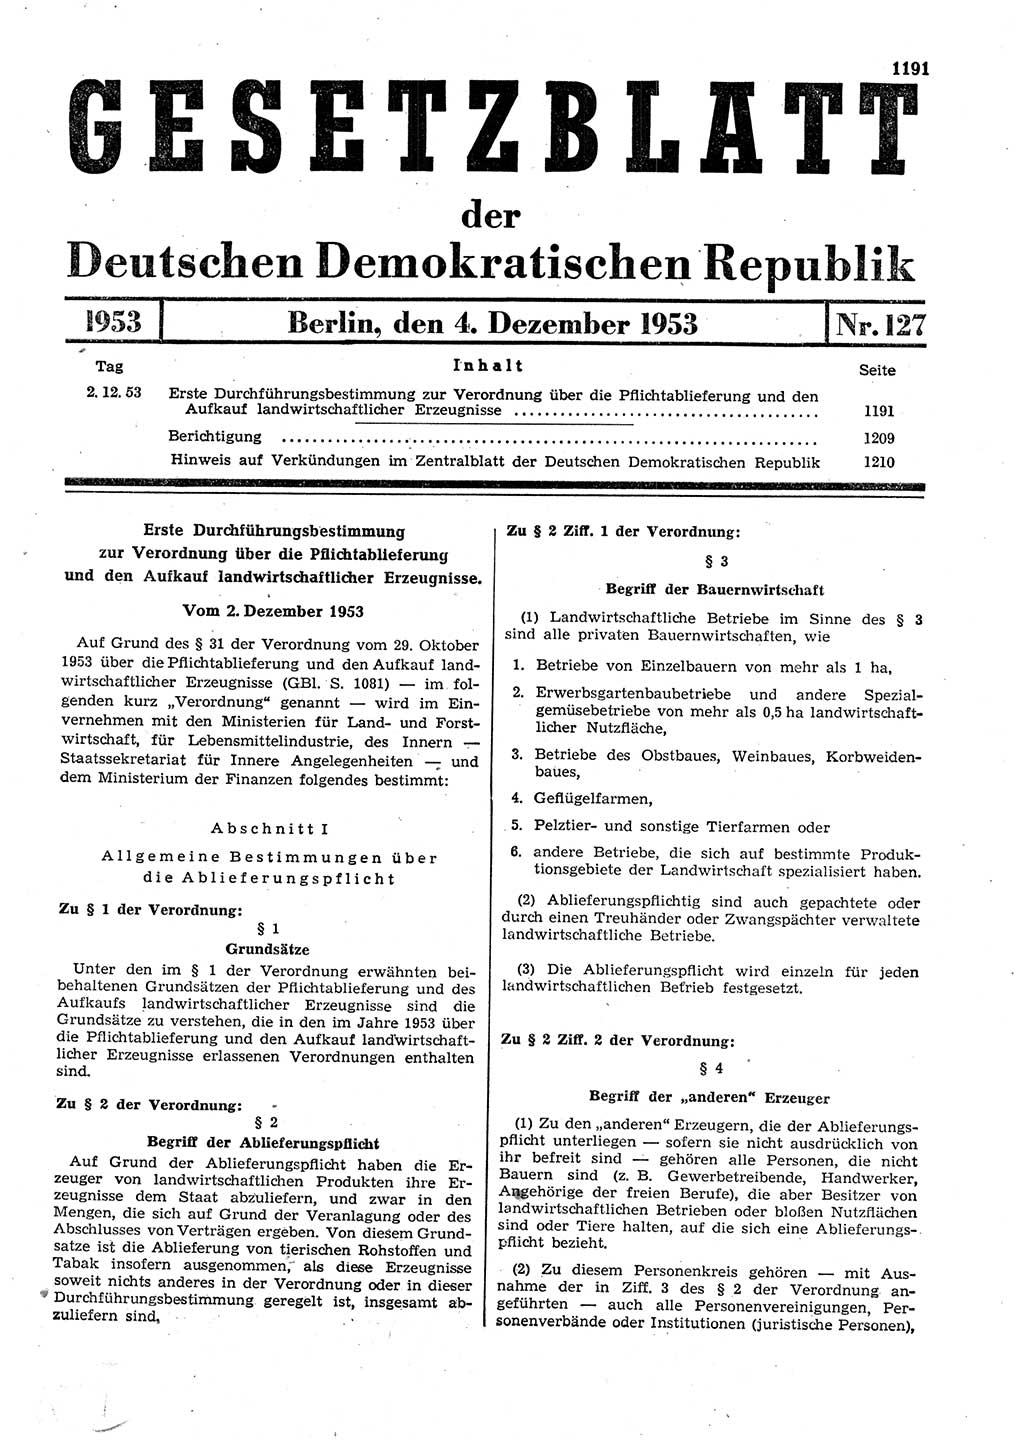 Gesetzblatt (GBl.) der Deutschen Demokratischen Republik (DDR) 1953, Seite 1191 (GBl. DDR 1953, S. 1191)